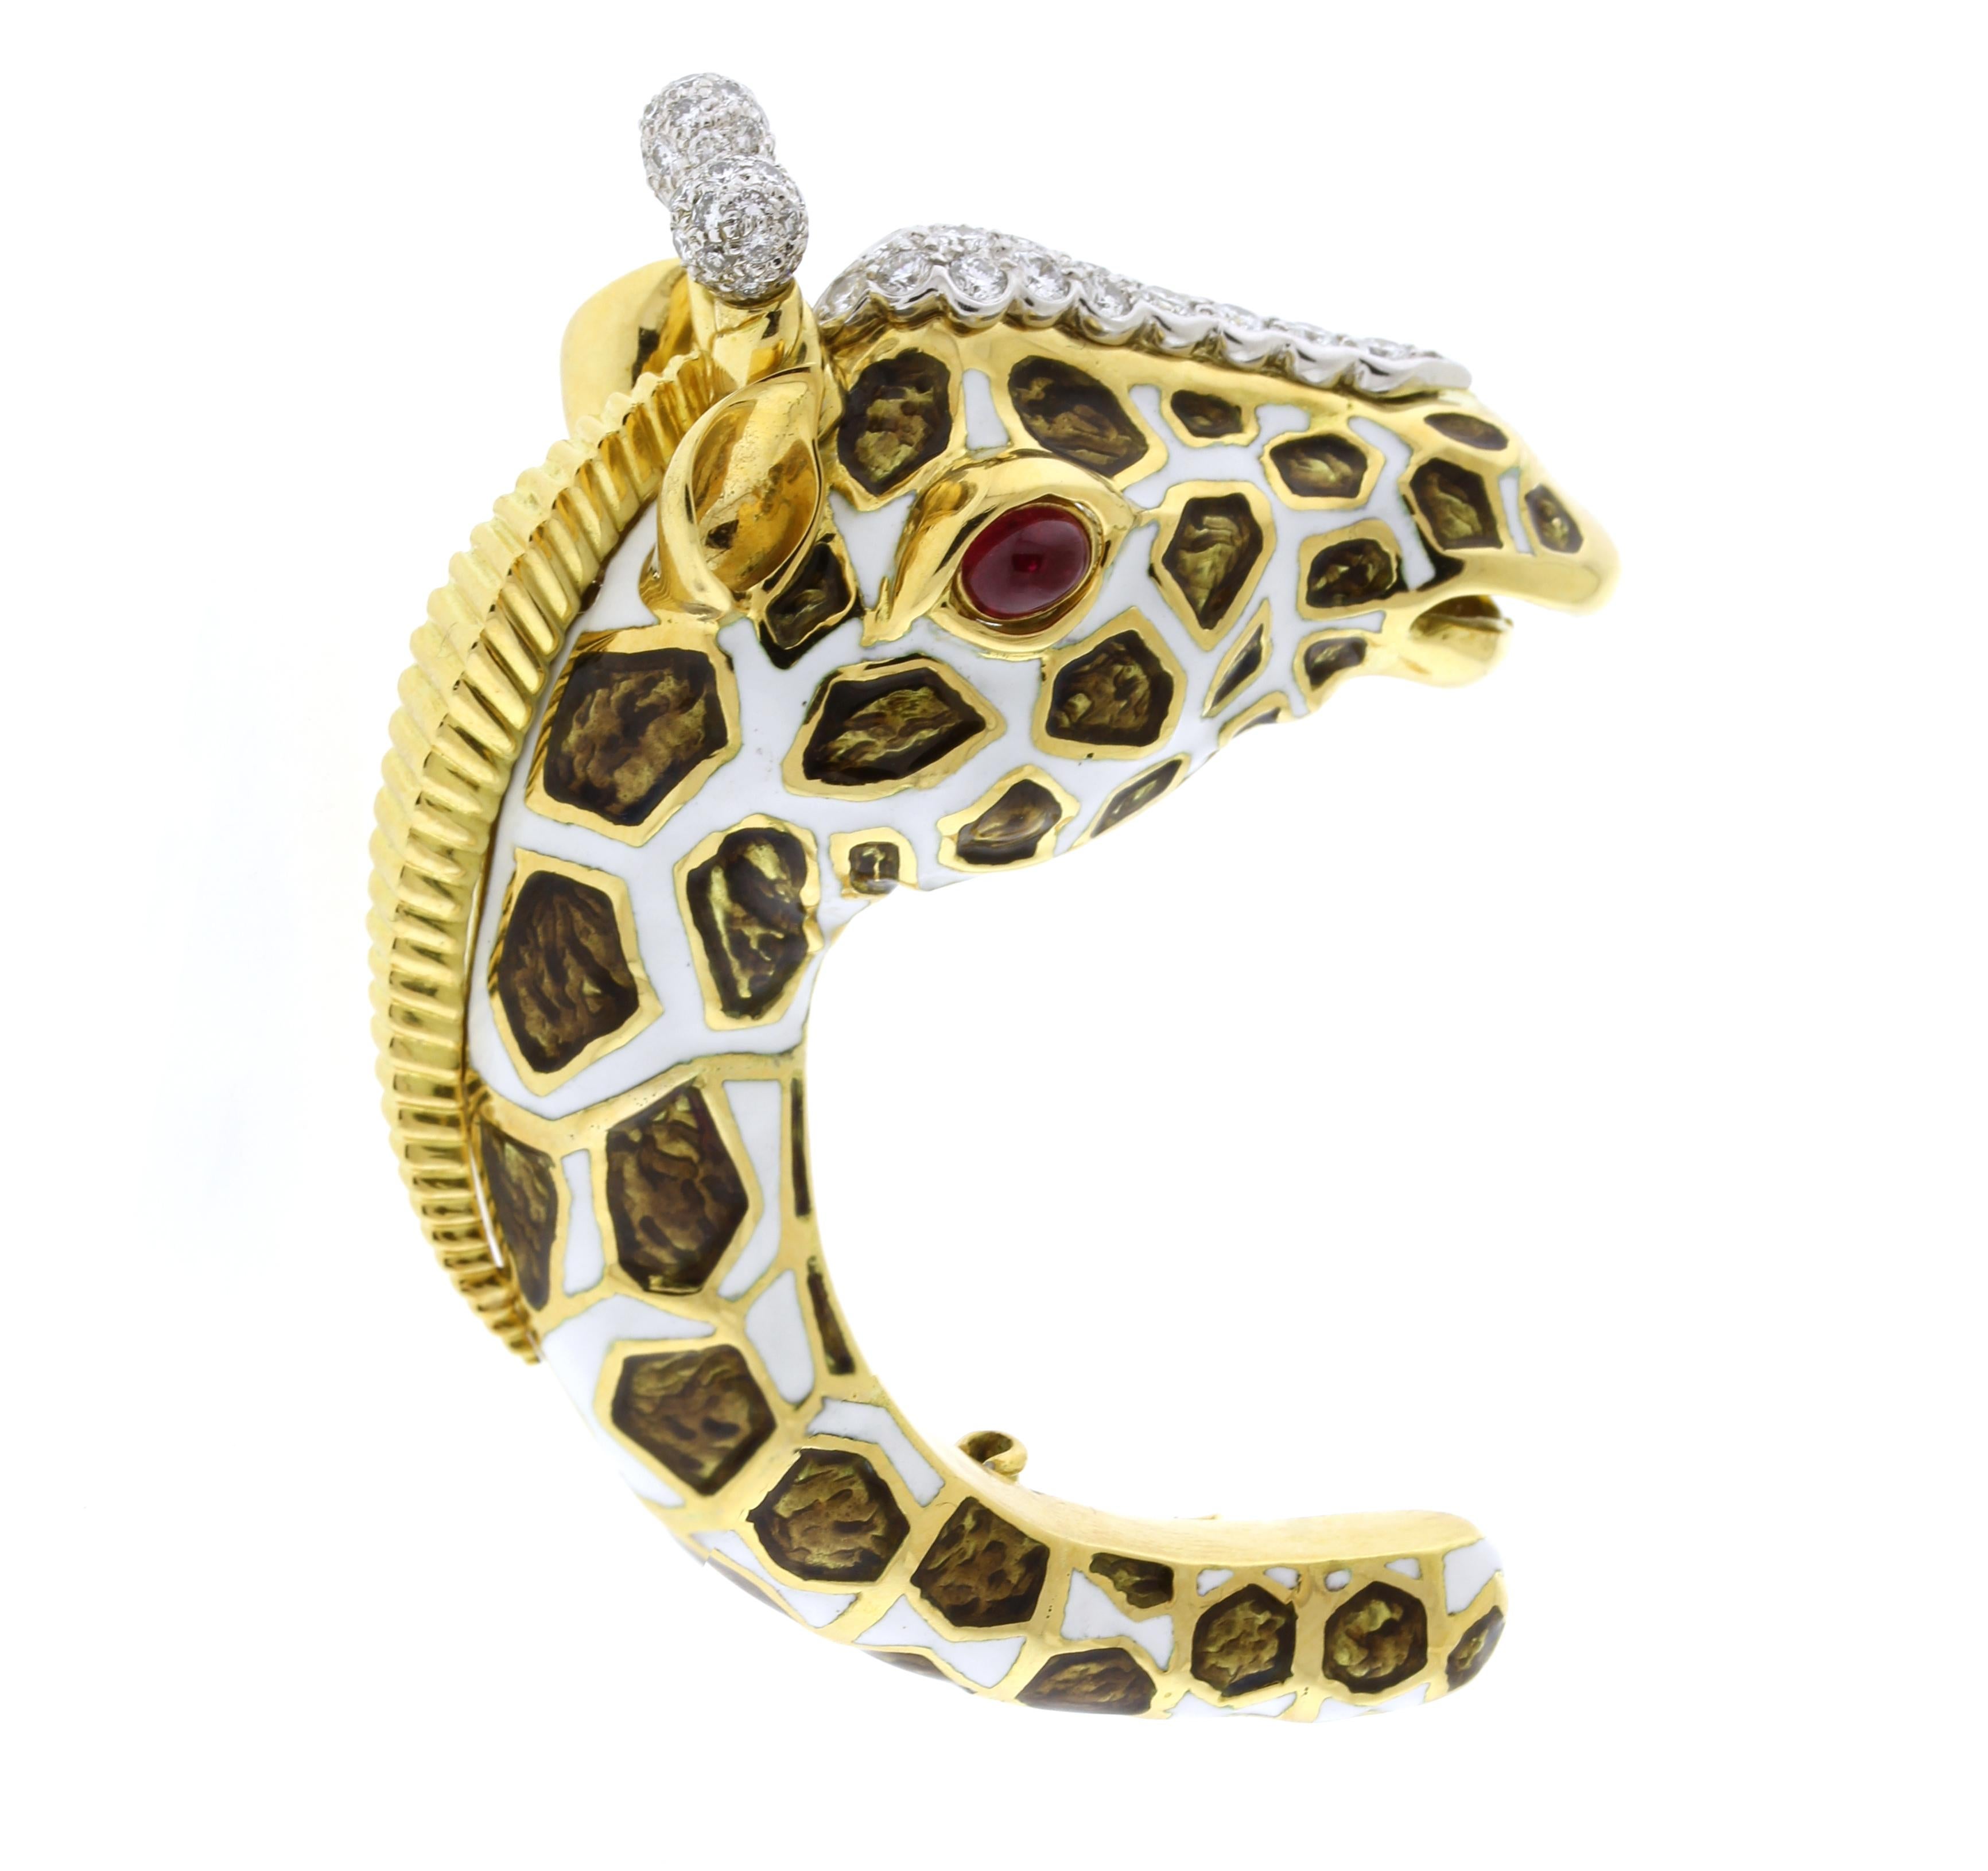 La broche girafe de la collection Kingdom de David Webb est une icône. Façonnée en or 18 carats et en platine, la broche est méticuleusement émaillée de blanc et d'émail pailloné brun représentant les taches des girafes. David Webb a présenté son